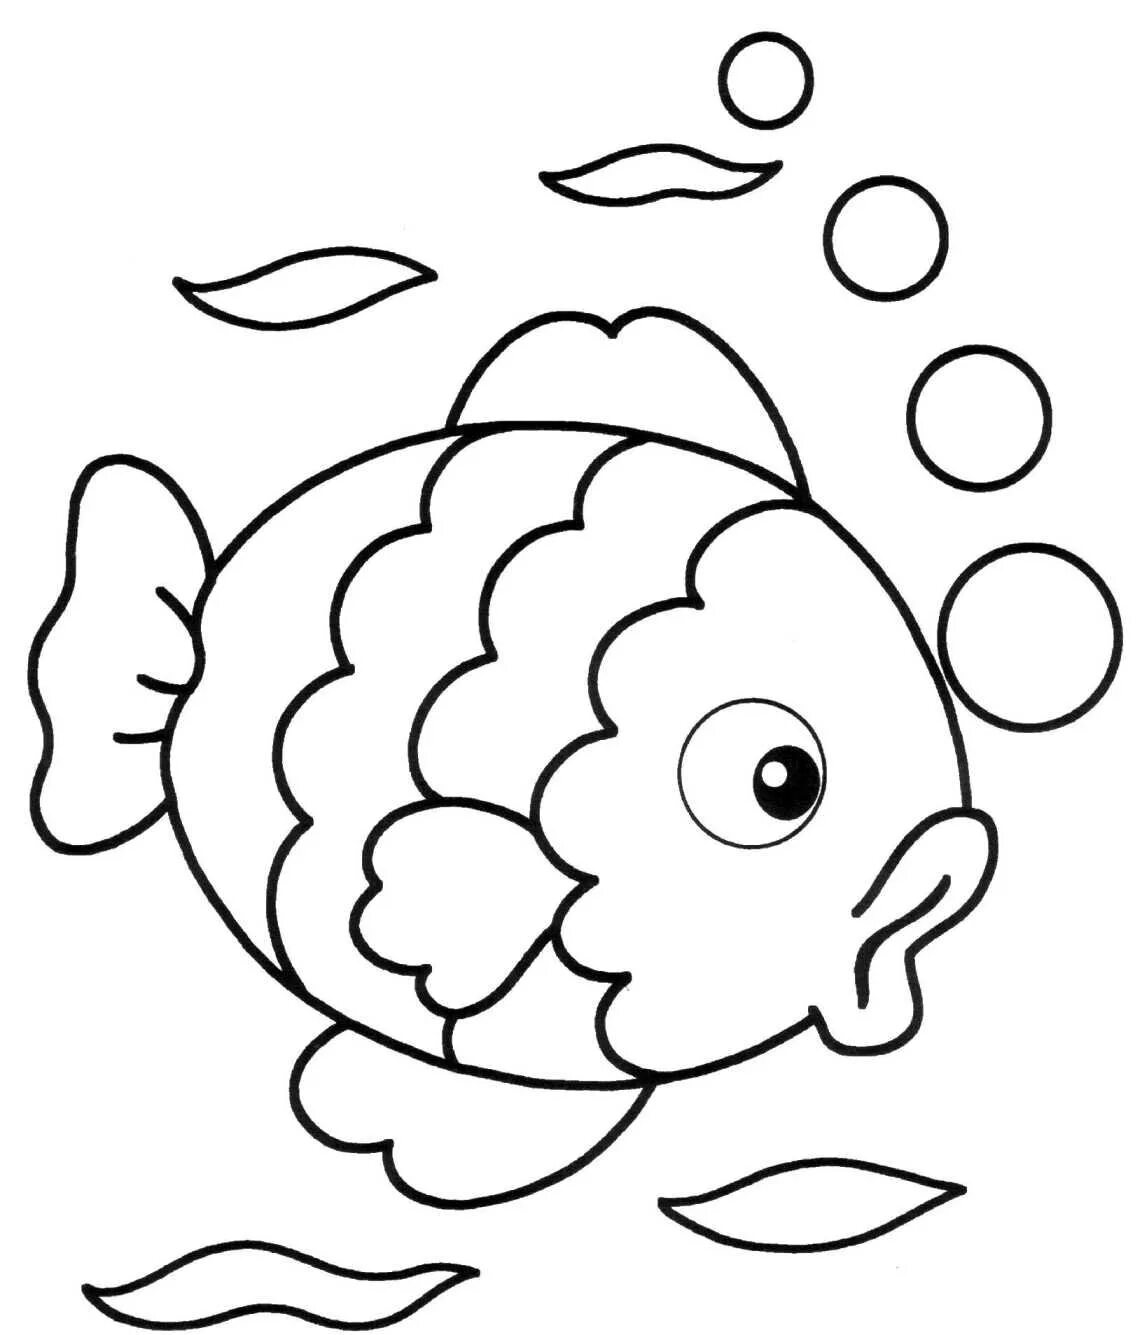 Раскраски для малышей. Раскраска рыбка. Картинки для раскрашивания для детей. Рыбка раскраска для детей.